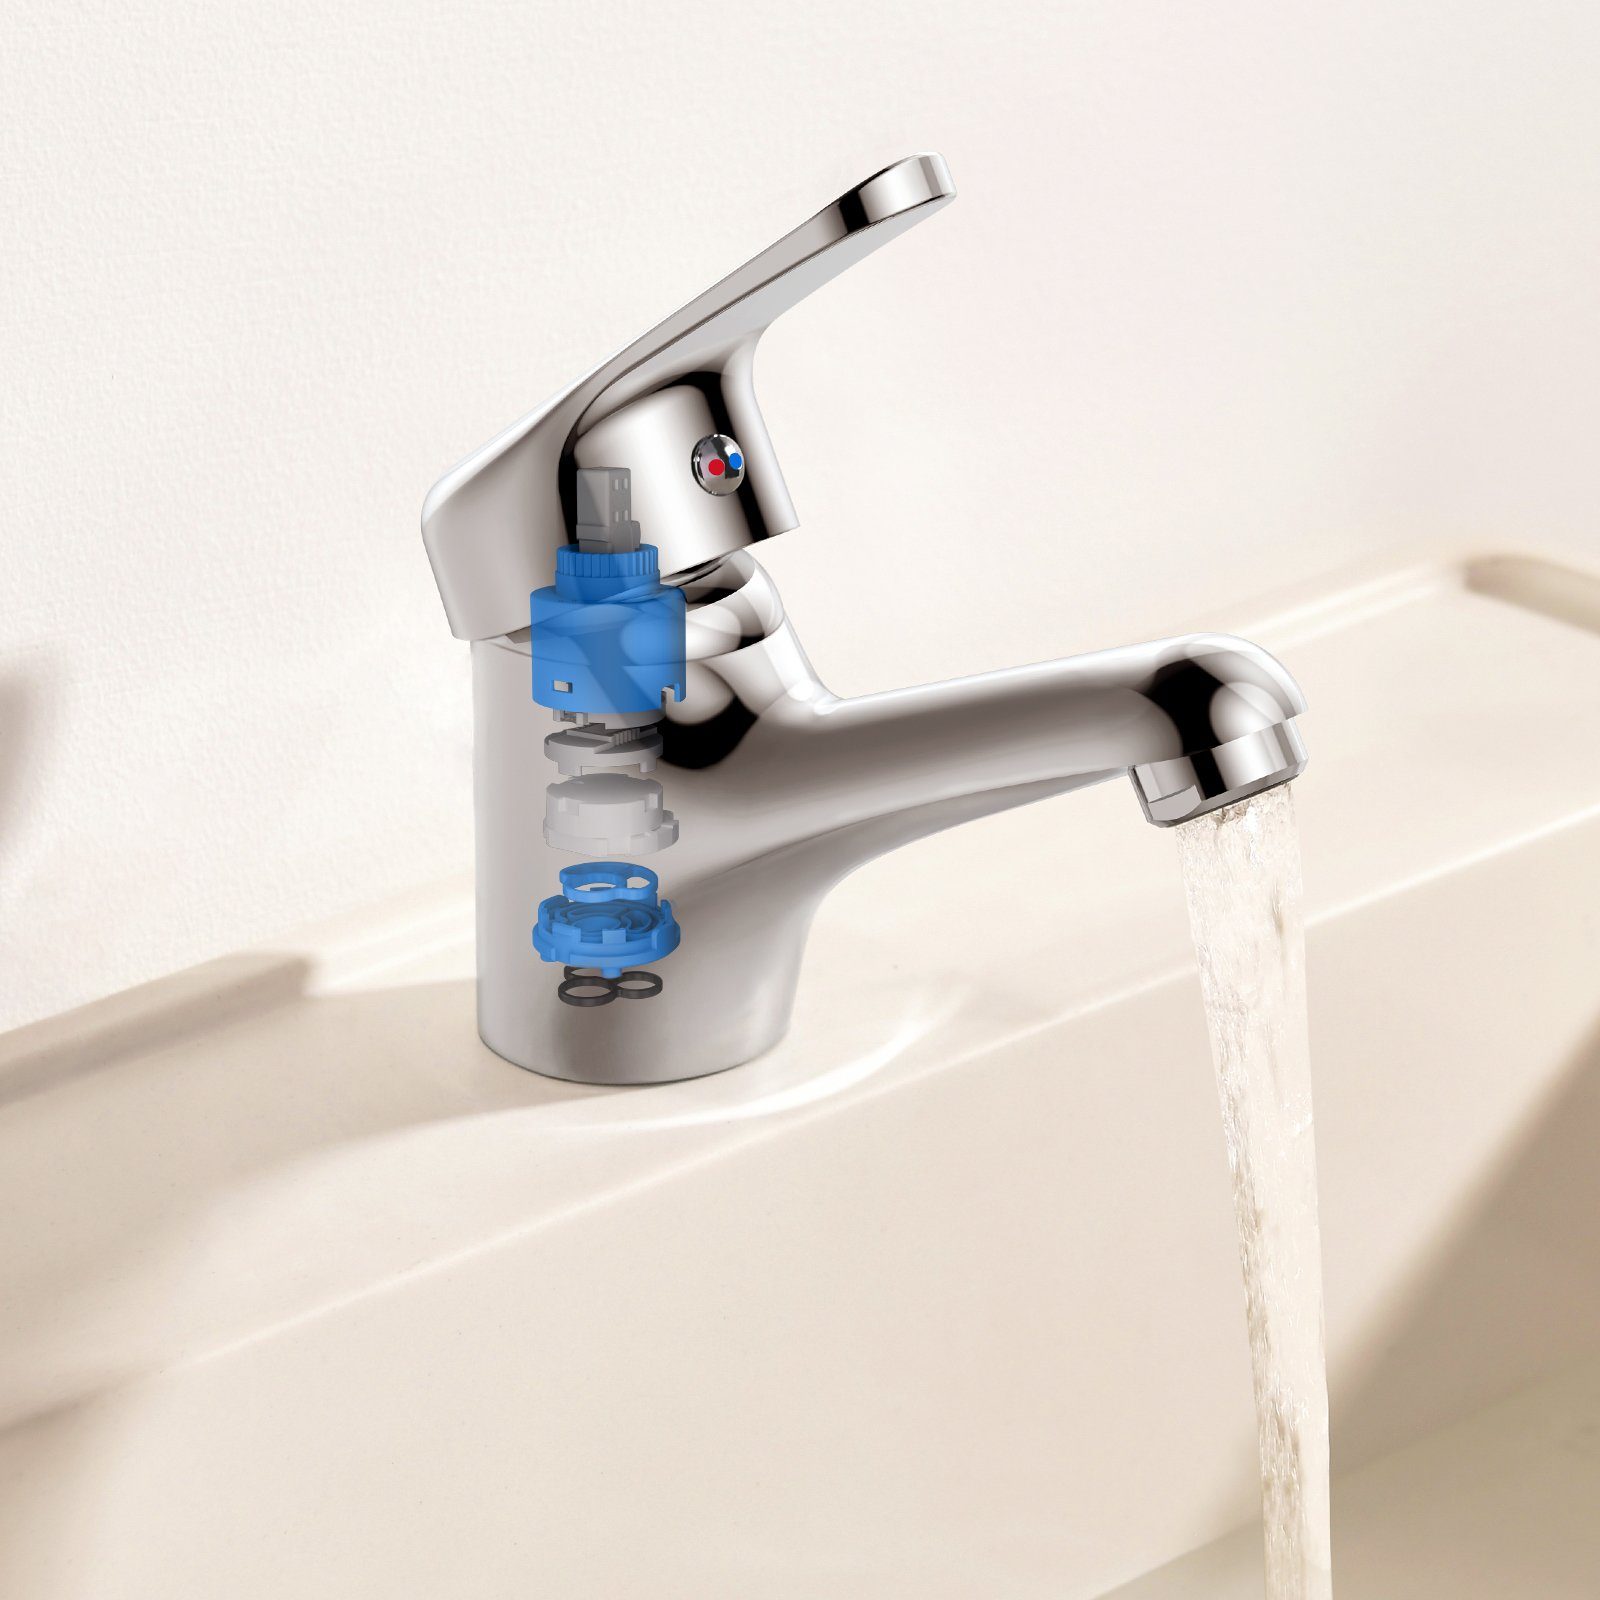 Bad, für Aufsatz-Waschbecken Chrom Waschtischarmatur Auralum Wasserhahn Badarmatur Mischbatterie, wassersparend